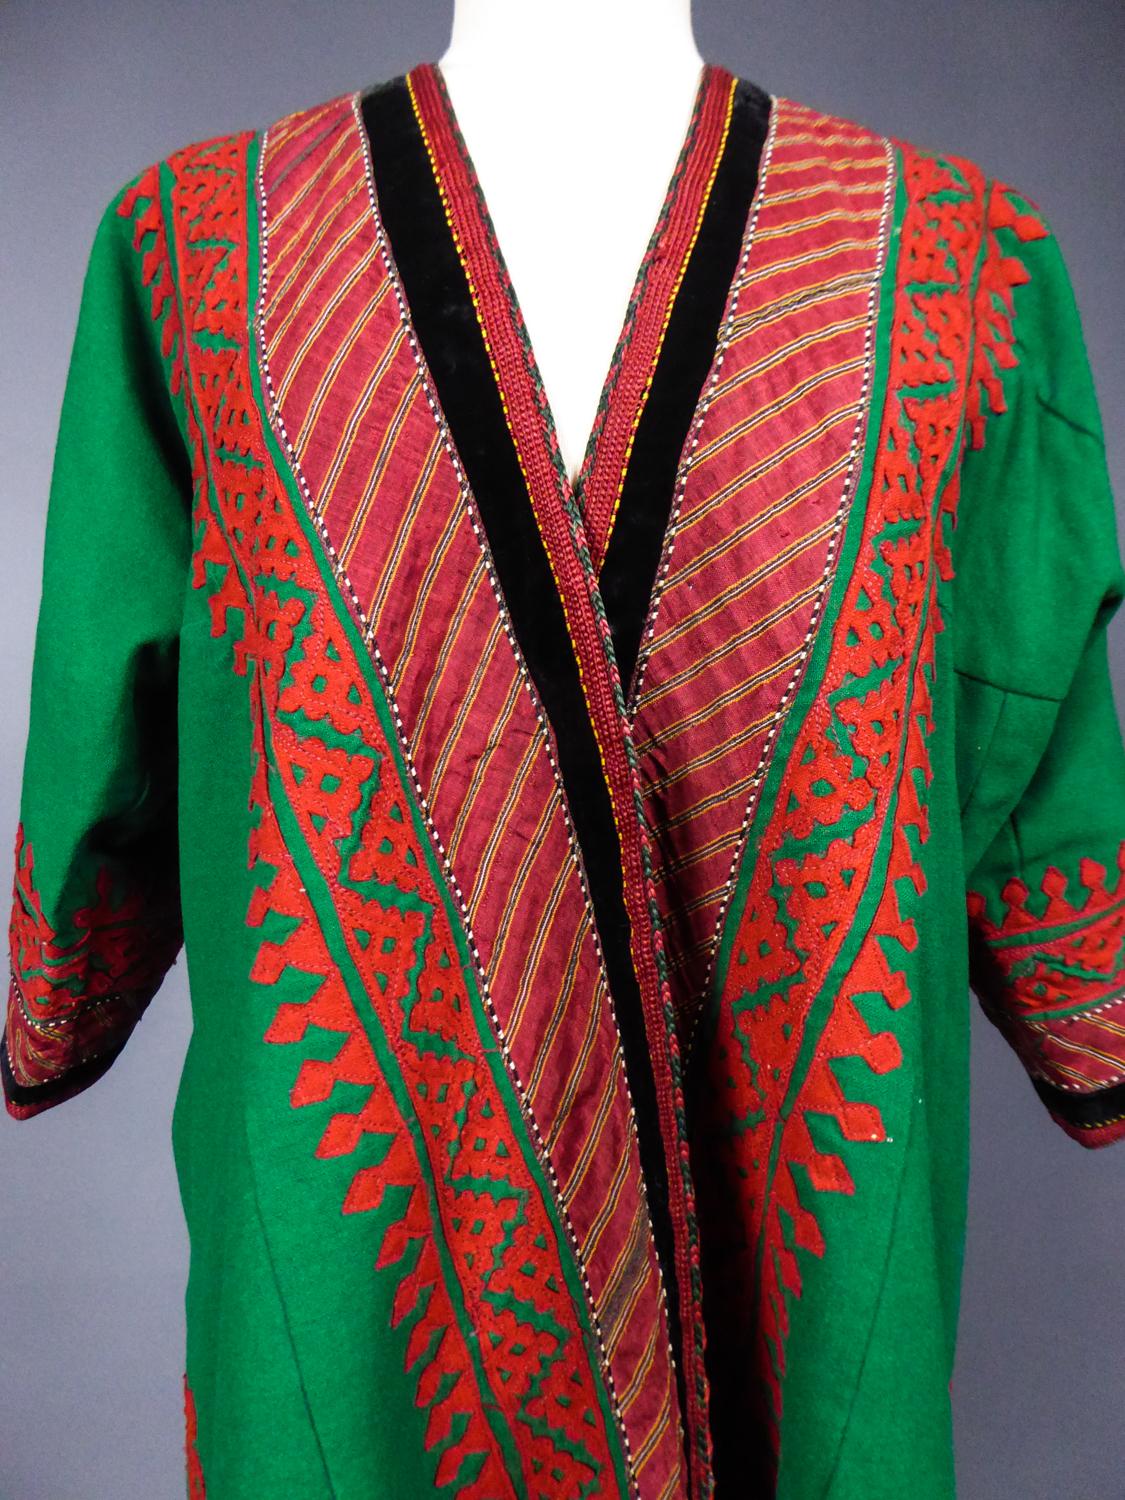 A Woolen Appliqué Coat - Turkmenistan Circa 1950 For Sale 2